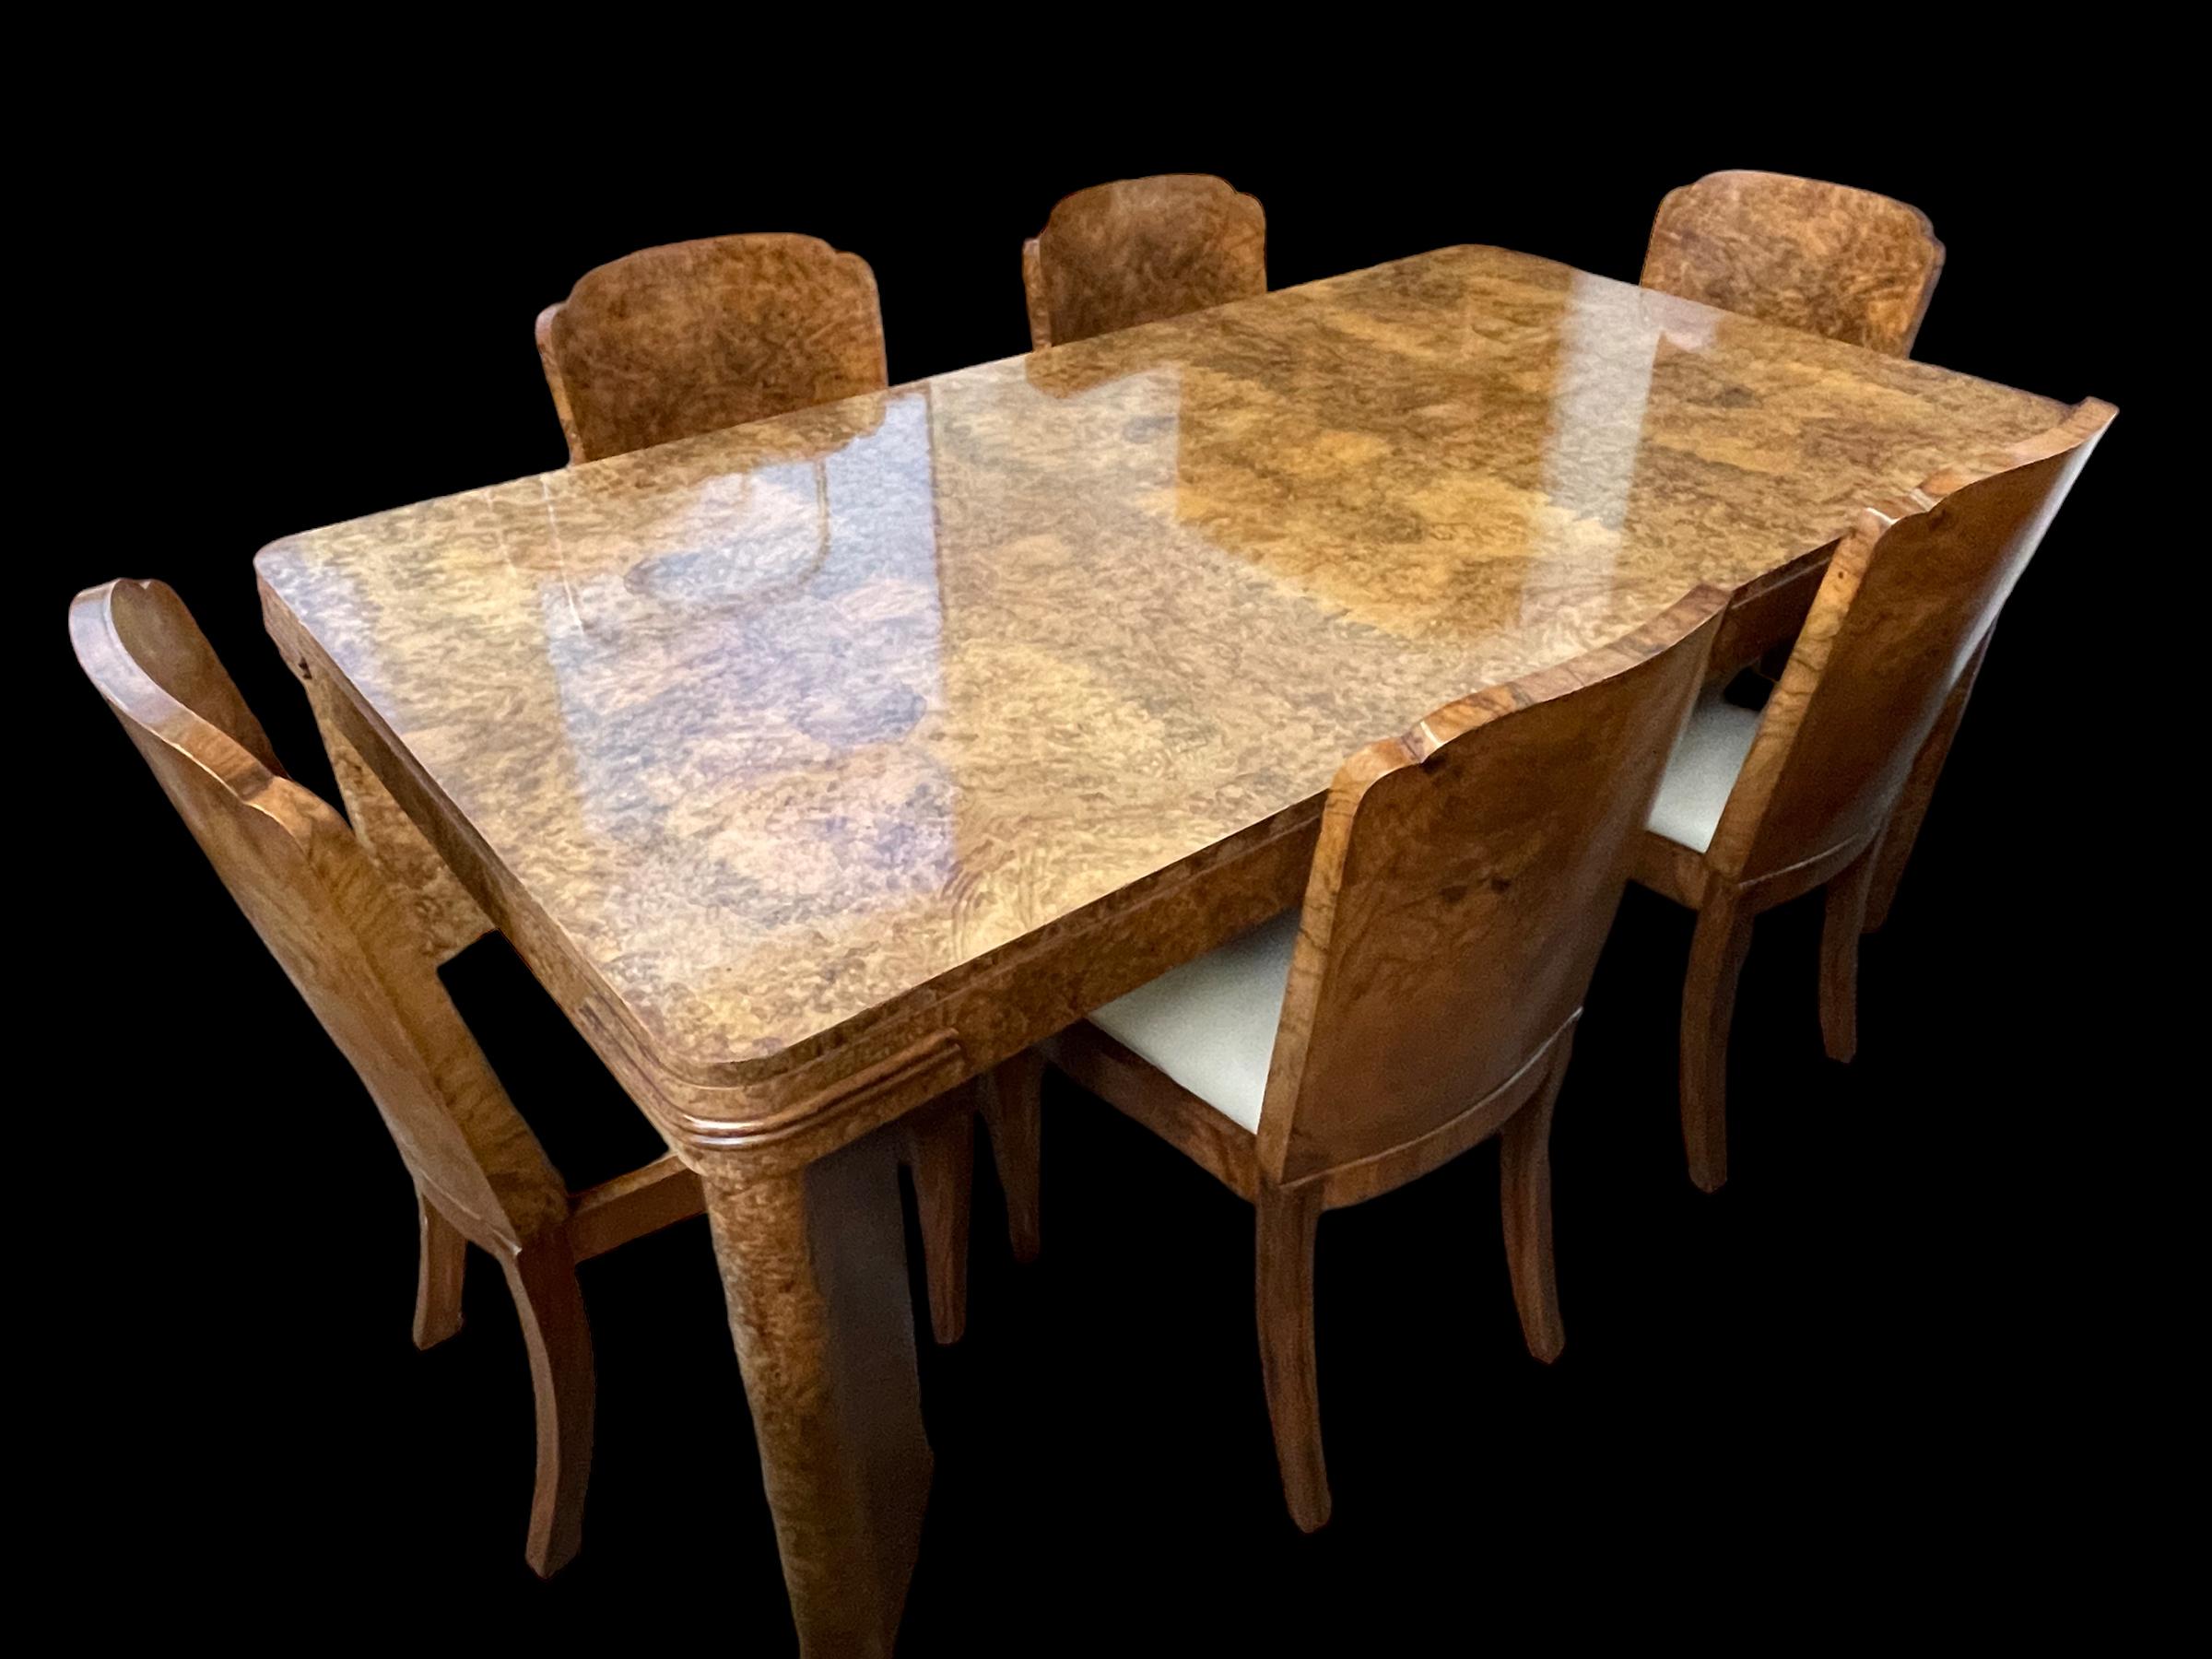 Ein feiner Art Deco Maurice Adams Esszimmertisch und sechs Stühle. Aus Nussbaumholz mit gut gestalteten schrägen Tischbeinen und Bändern an jeder der vier Ecken der Tischplatte. Die passenden Stühle sind aus Nussbaumholz und die Sitze wurden gerade